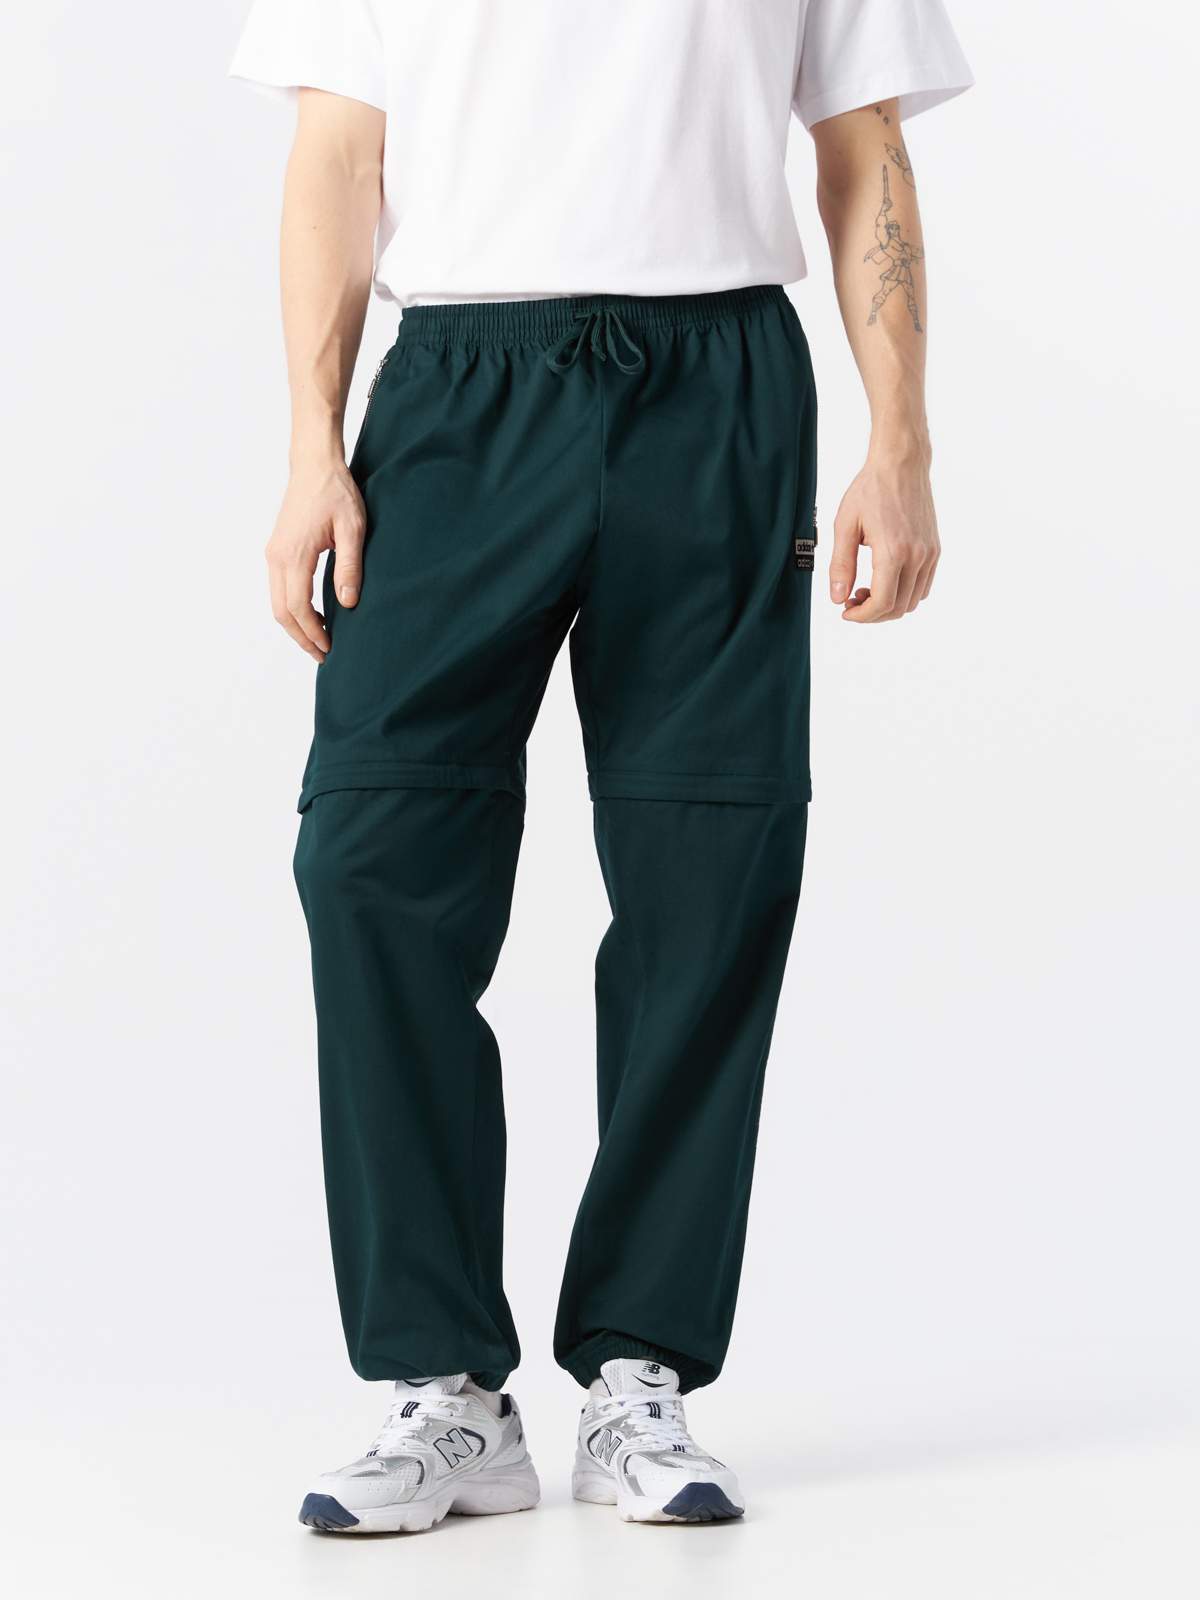 Спортивные брюки мужские Adidas H11464 зеленые XS - купить в Москве, цены на Мегамаркет | 100056495536